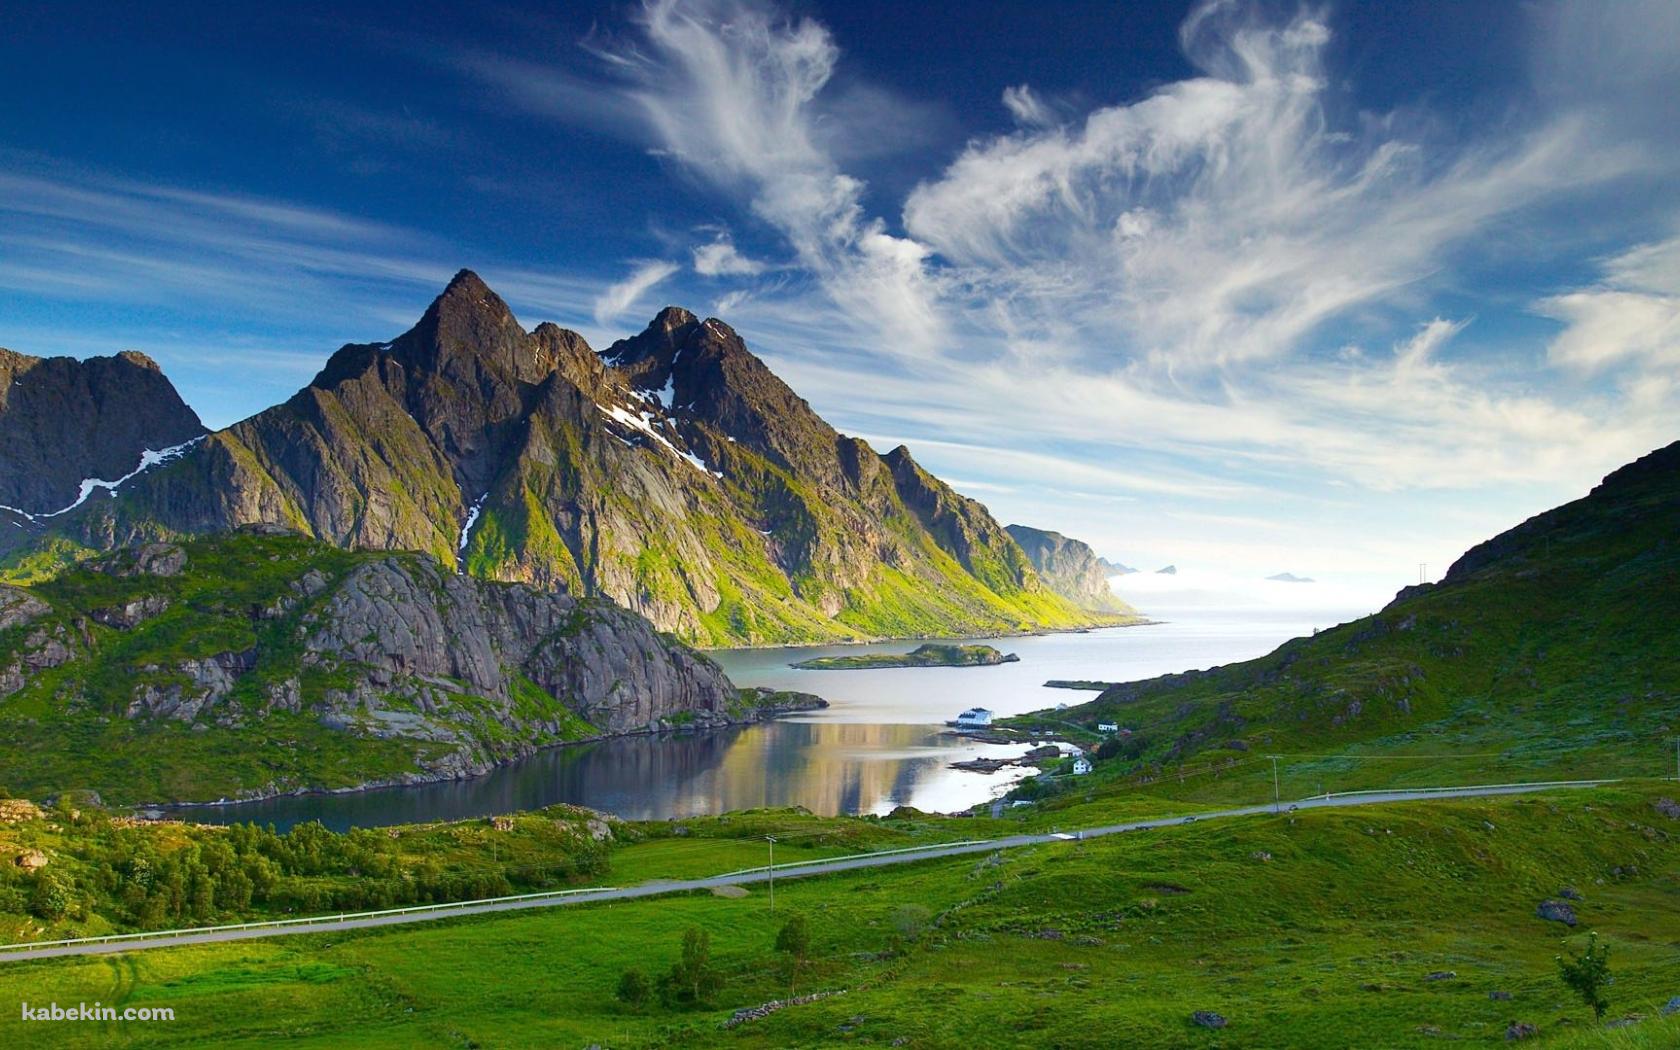 ノルウェーの美麗な景色の壁紙(1680px x 1050px) 高画質 PC・デスクトップ用